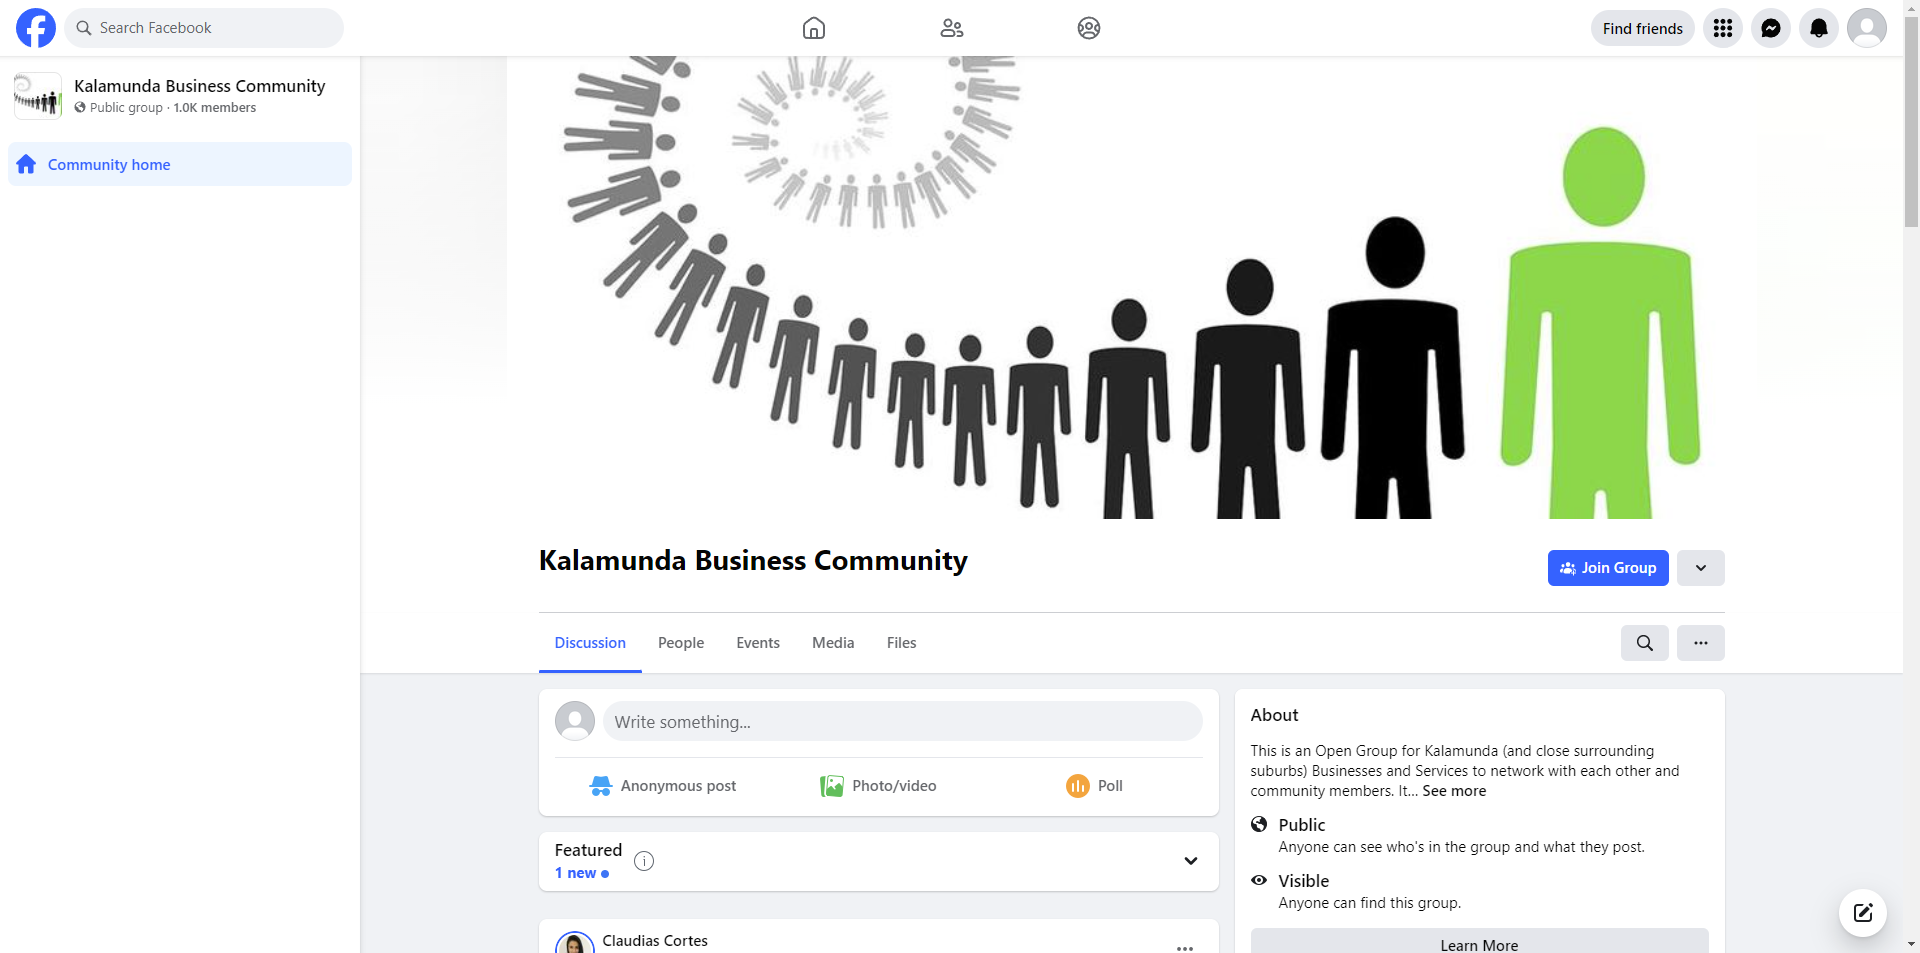 Kalamunda Business Community